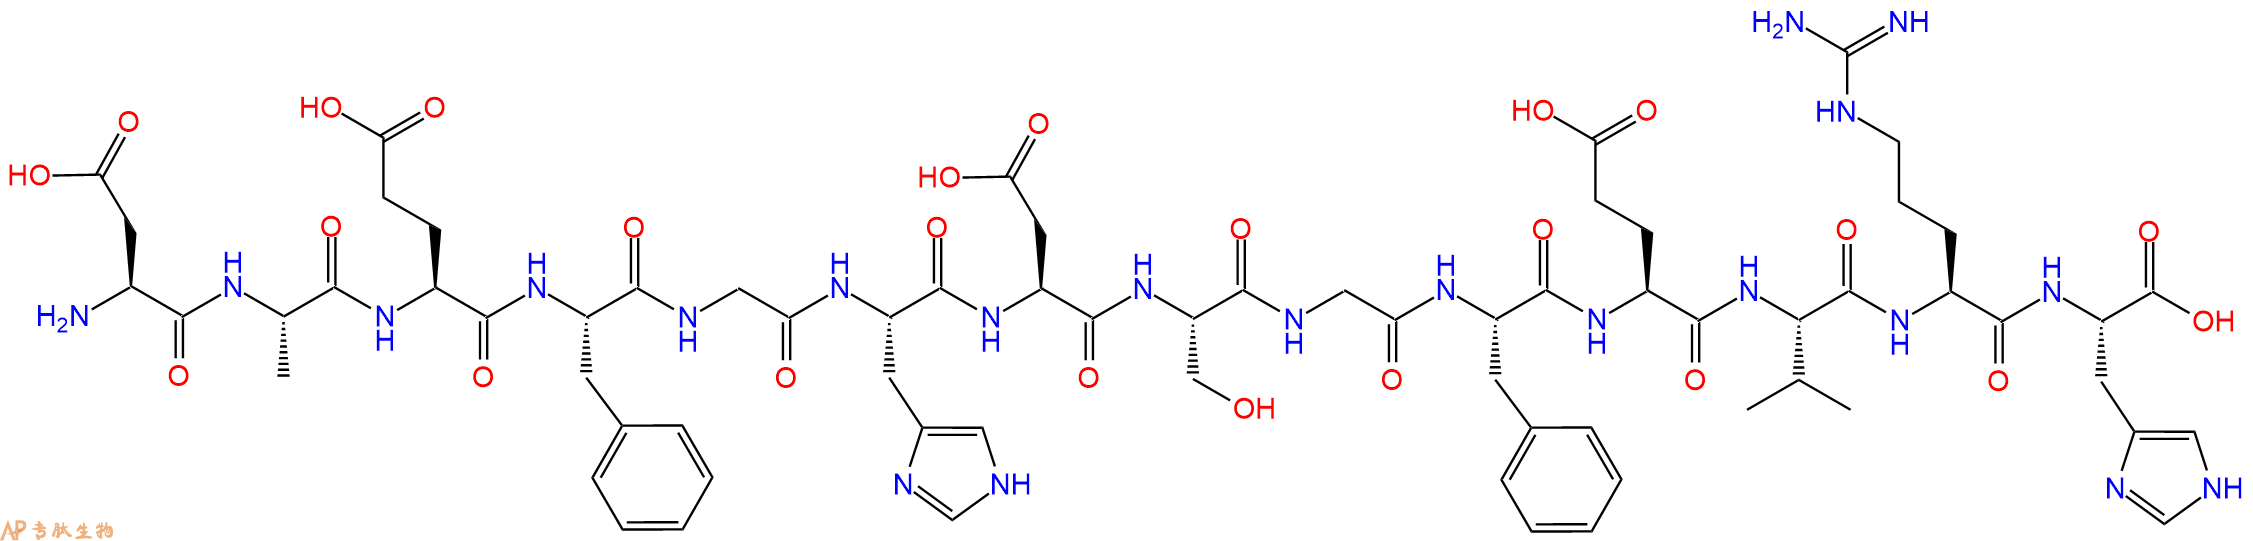 专肽生物产品淀粉肽Beta-Amyloid(1-14),mouse,rat